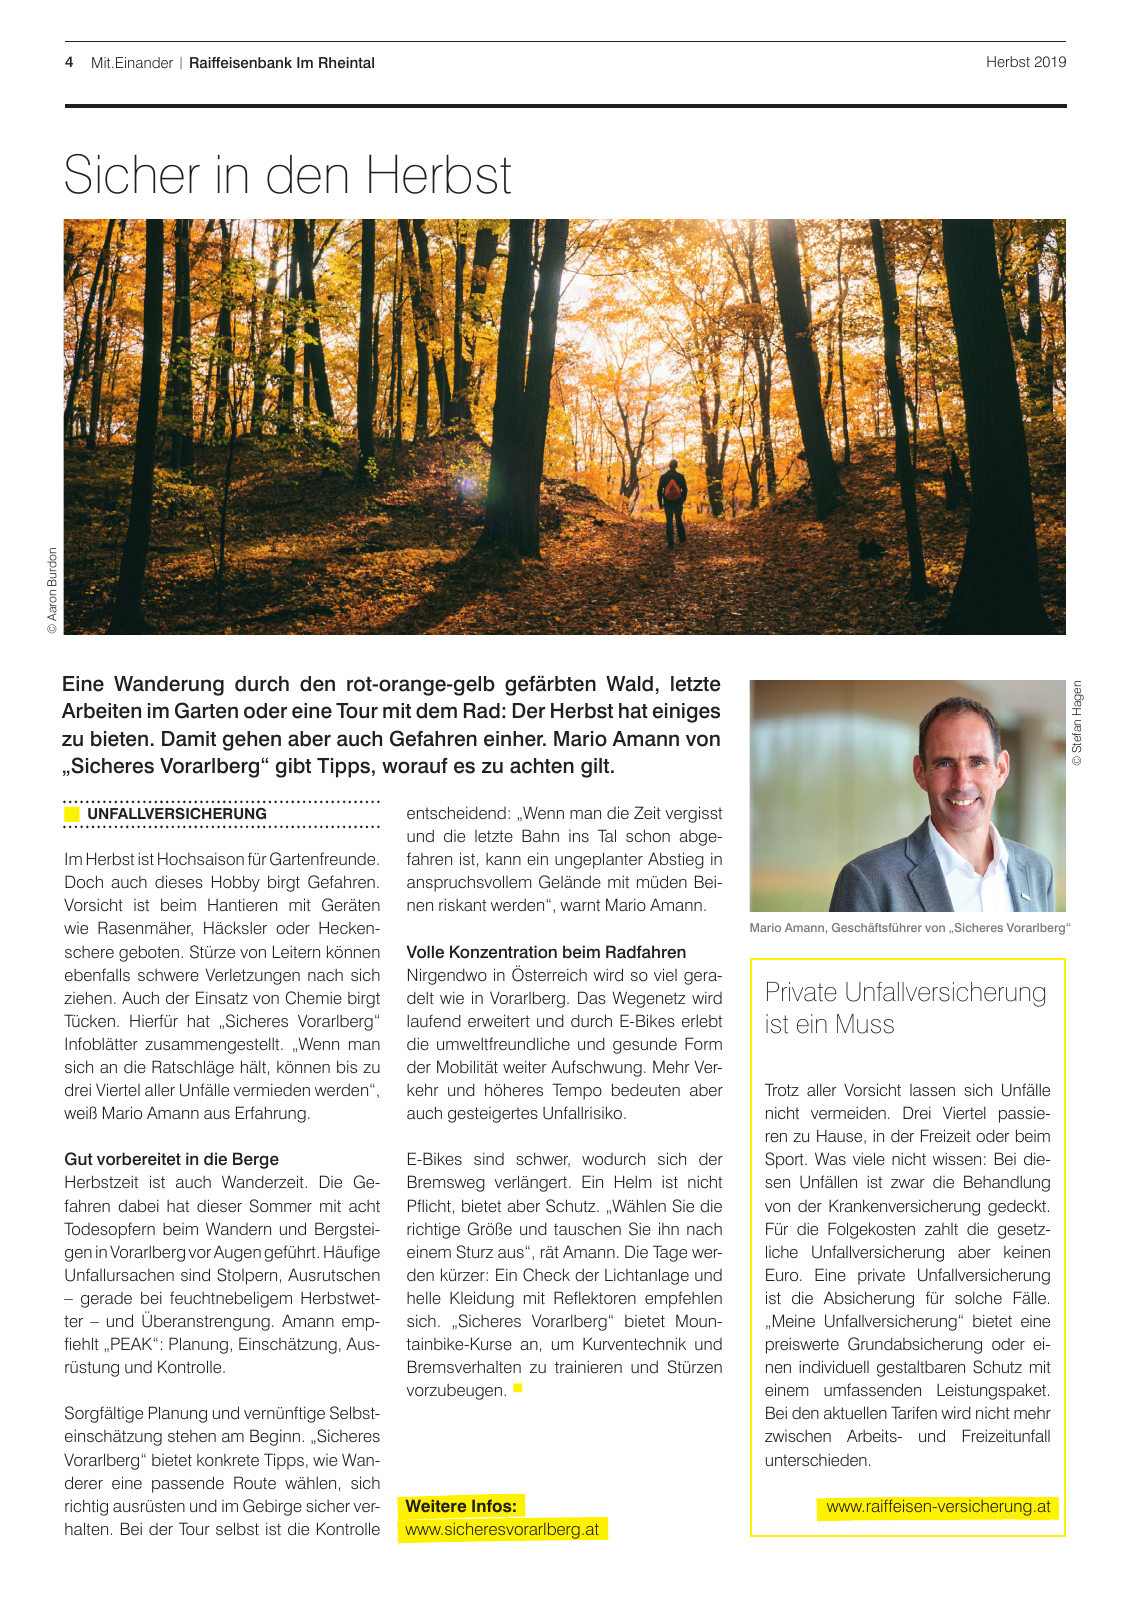 Vorschau Mitgliederzeitung RB im Rheintal Herbst 2019 Seite 4